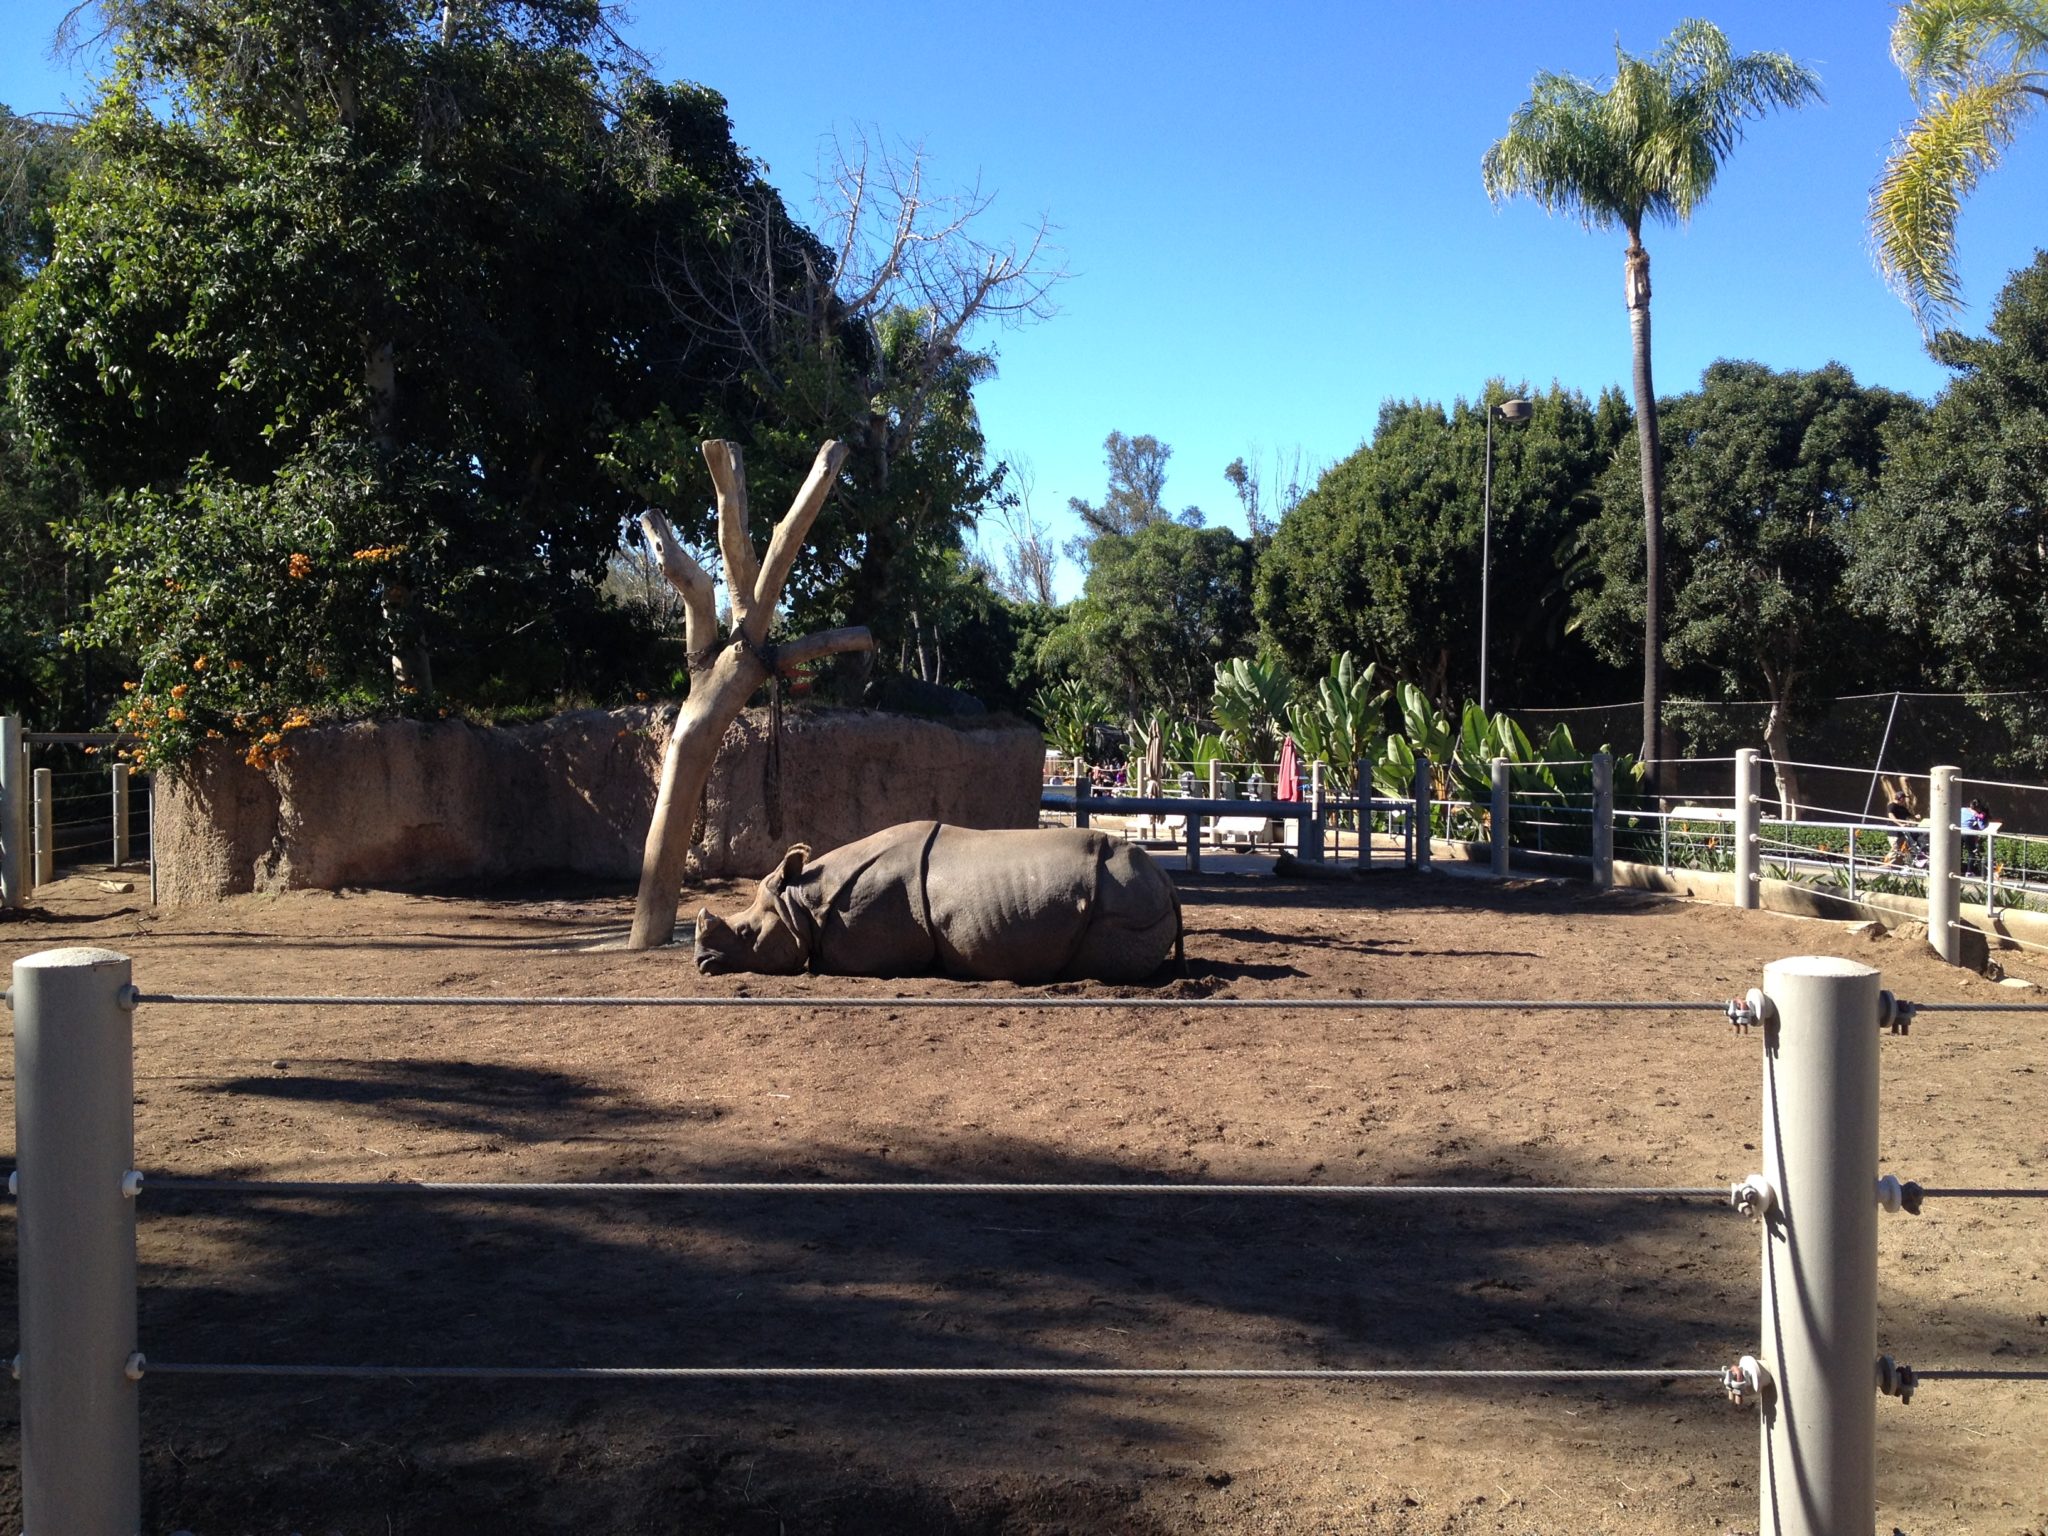 Rhinoceros laying down in the sun